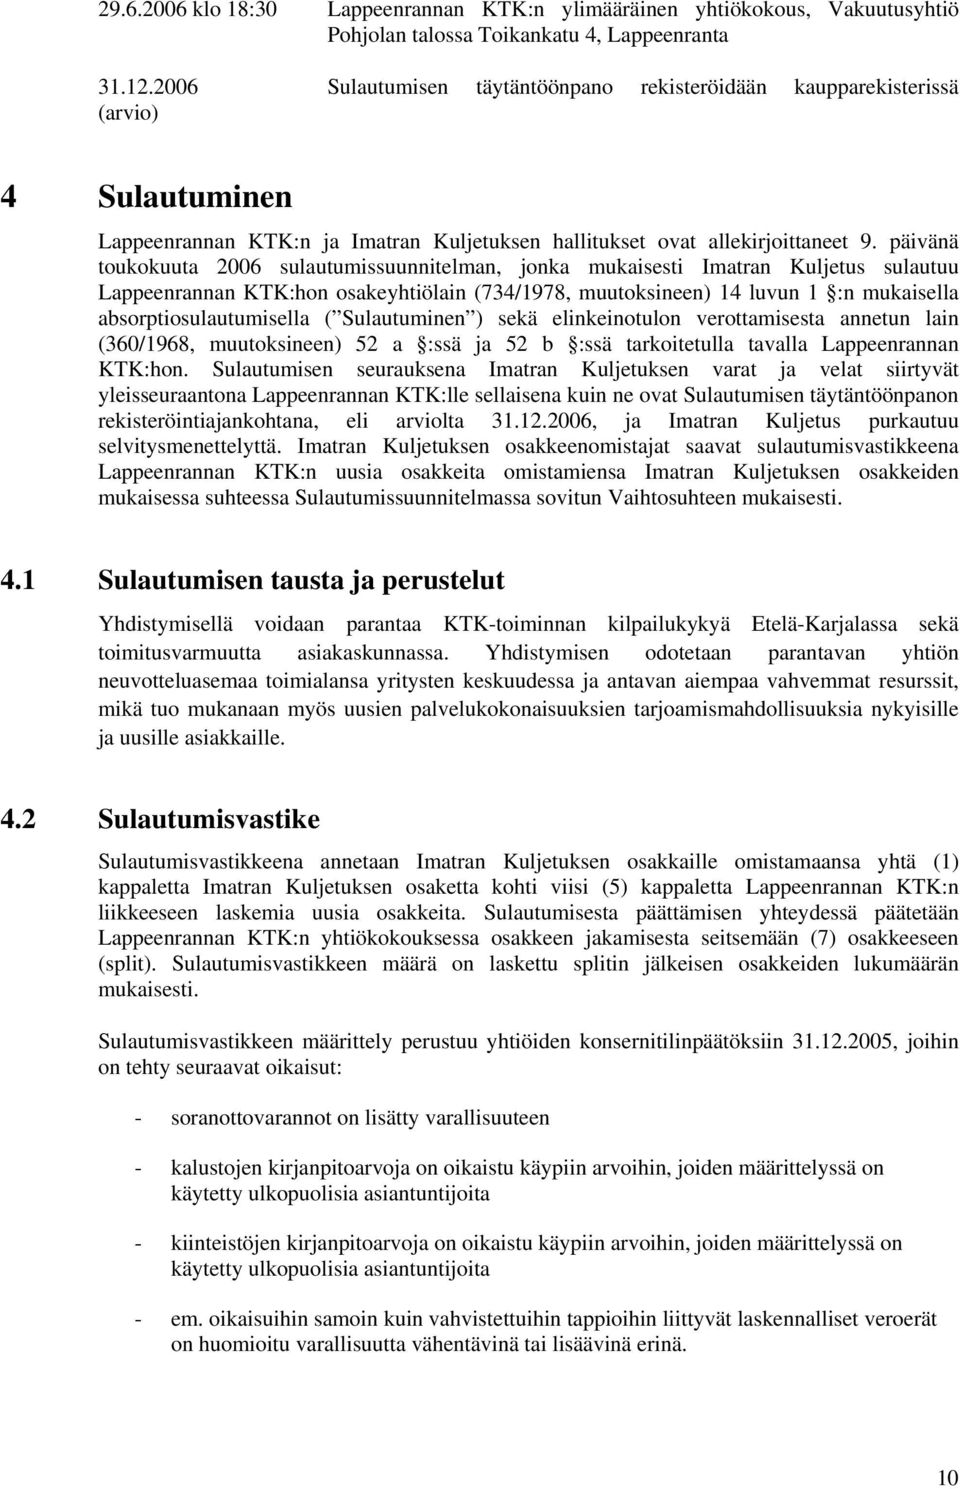 päivänä toukokuuta 2006 sulautumissuunnitelman, jonka mukaisesti Imatran Kuljetus sulautuu Lappeenrannan KTK:hon osakeyhtiölain (734/1978, muutoksineen) 14 luvun 1 :n mukaisella